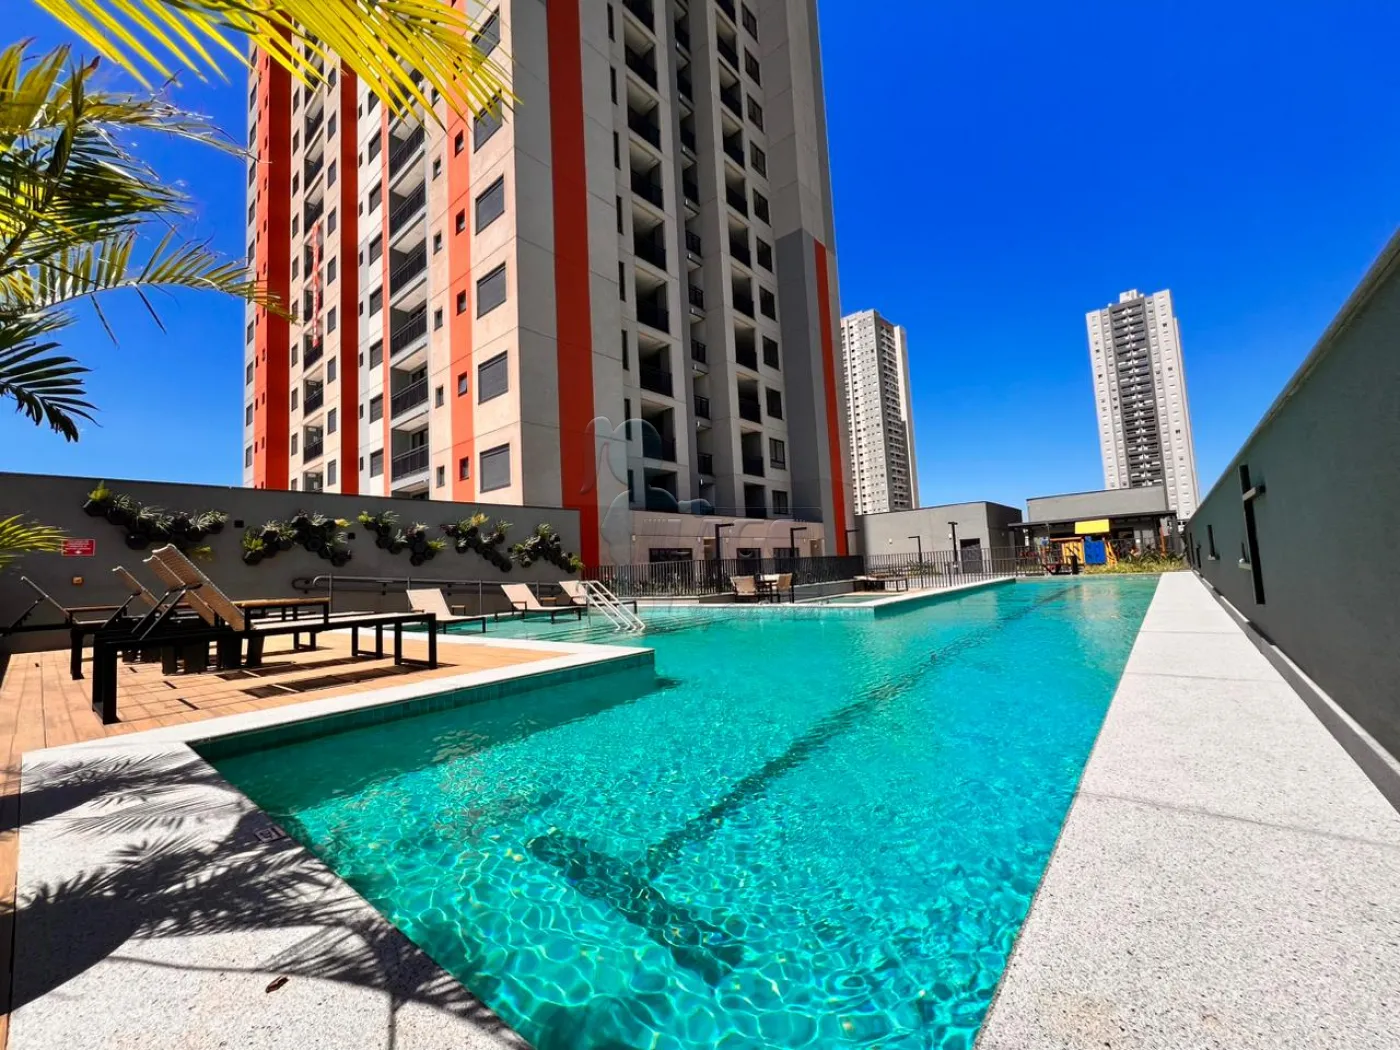 Comprar Apartamentos / Padrão em Ribeirão Preto R$ 580.000,00 - Foto 1